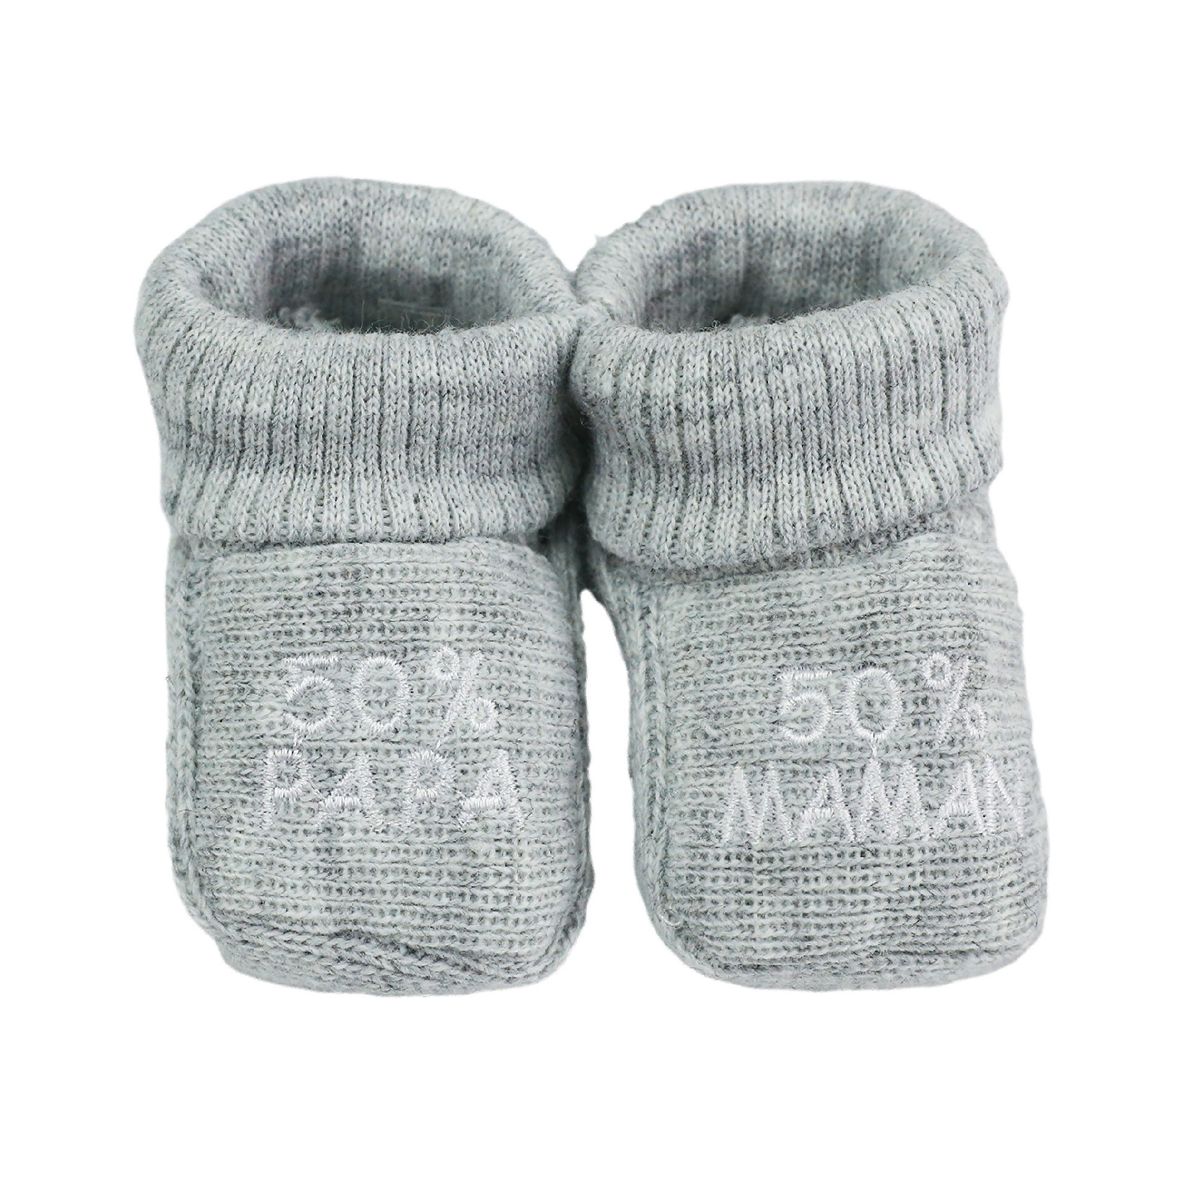 Chaussettes antidérapantes à motifs pour bébé - Joy (Lot de 2 paires)